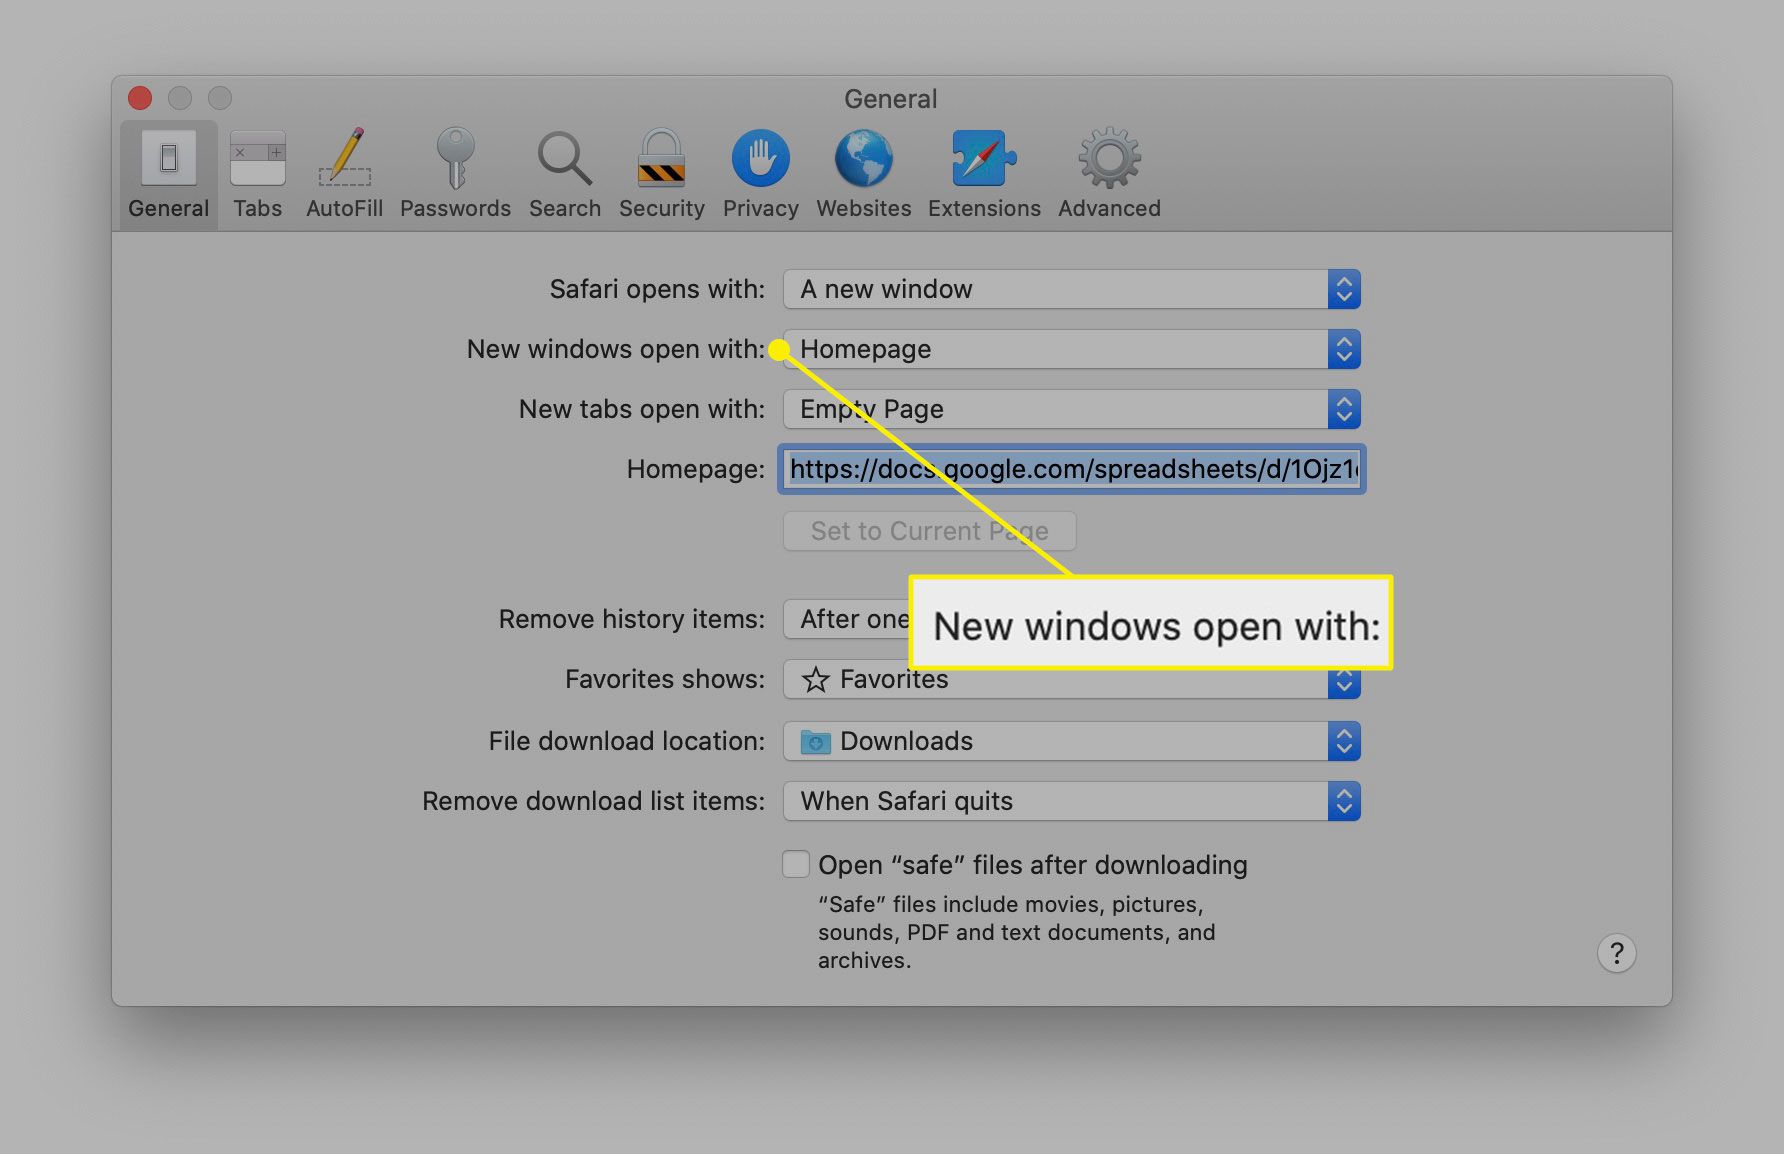 De nieuwe vensters openen met optie in Safari